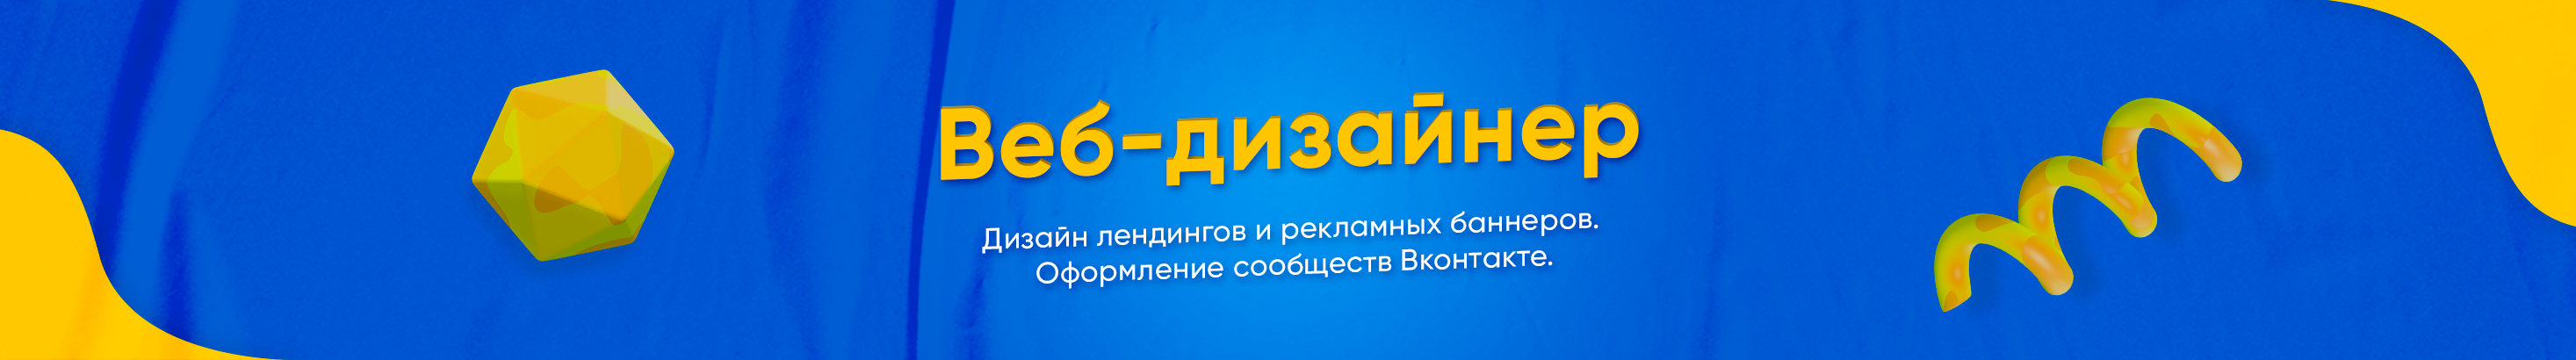 Екатерина Иванова's profile banner